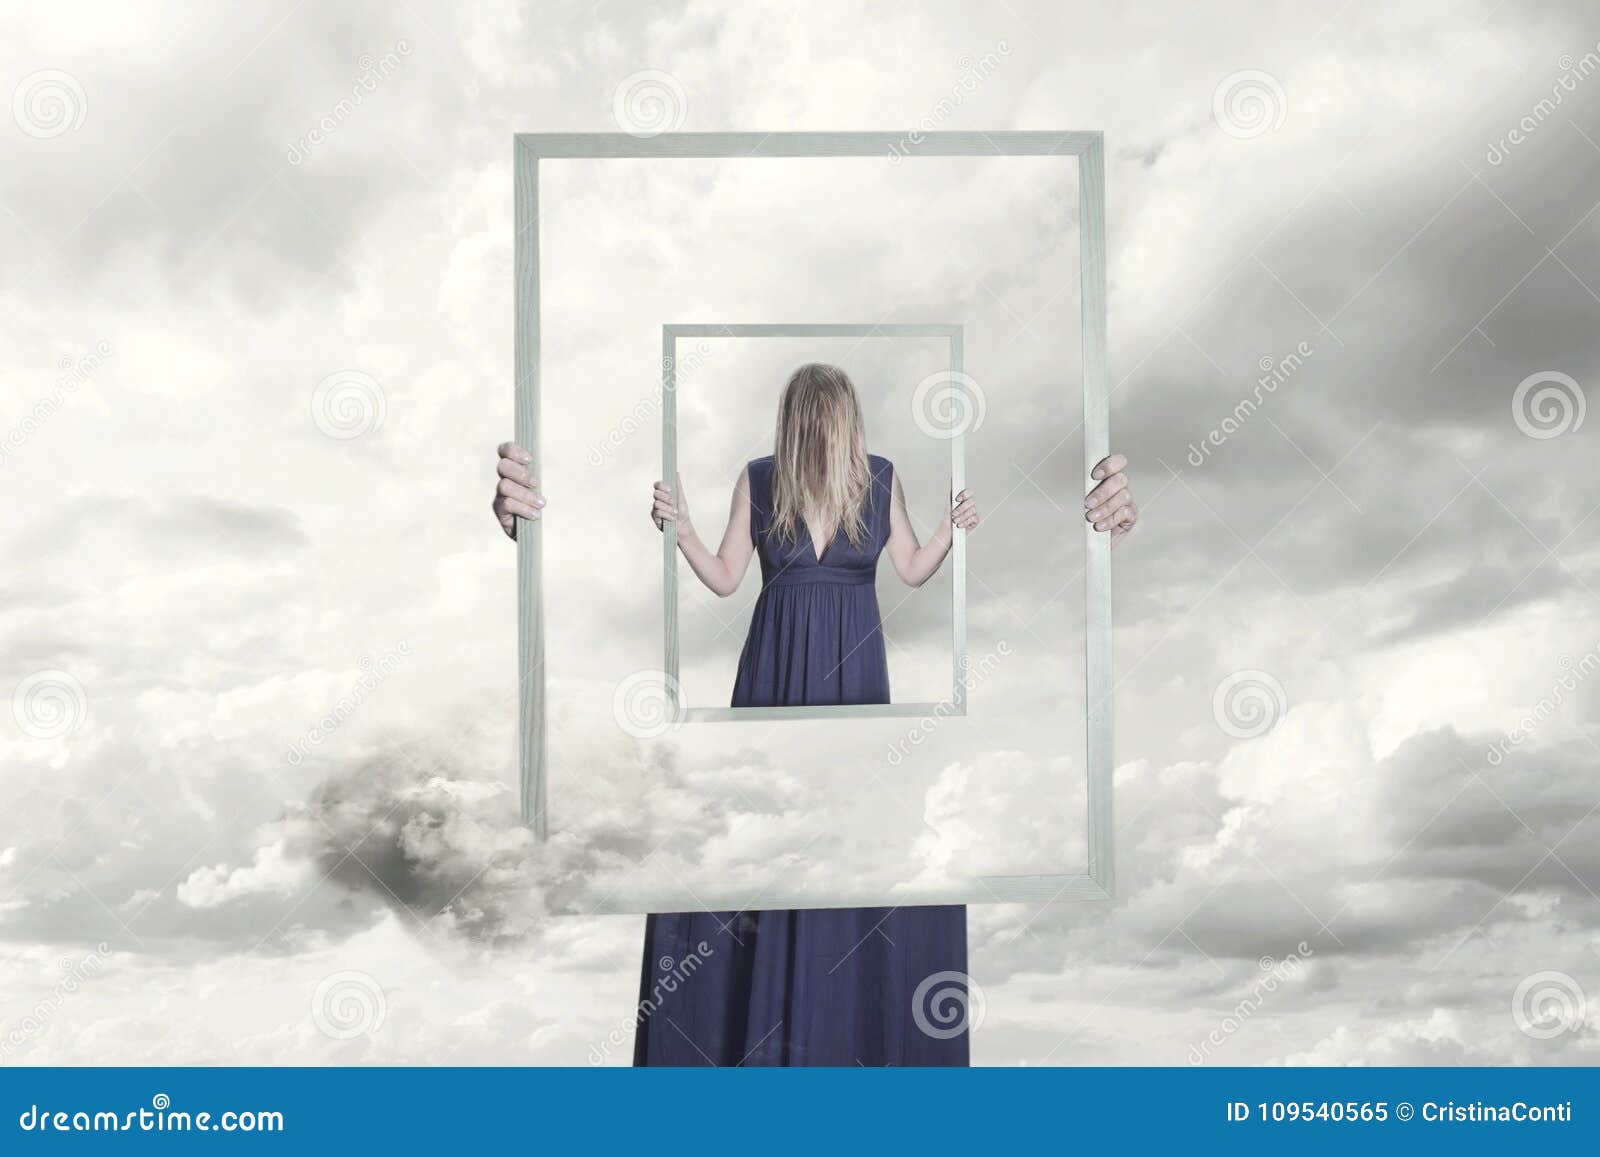 Surreales Bild Einer Frau, Die Einen Rahmen Hält, Der Sich Reflektiert  Stockbild - Bild von blau, architektur: 109540565